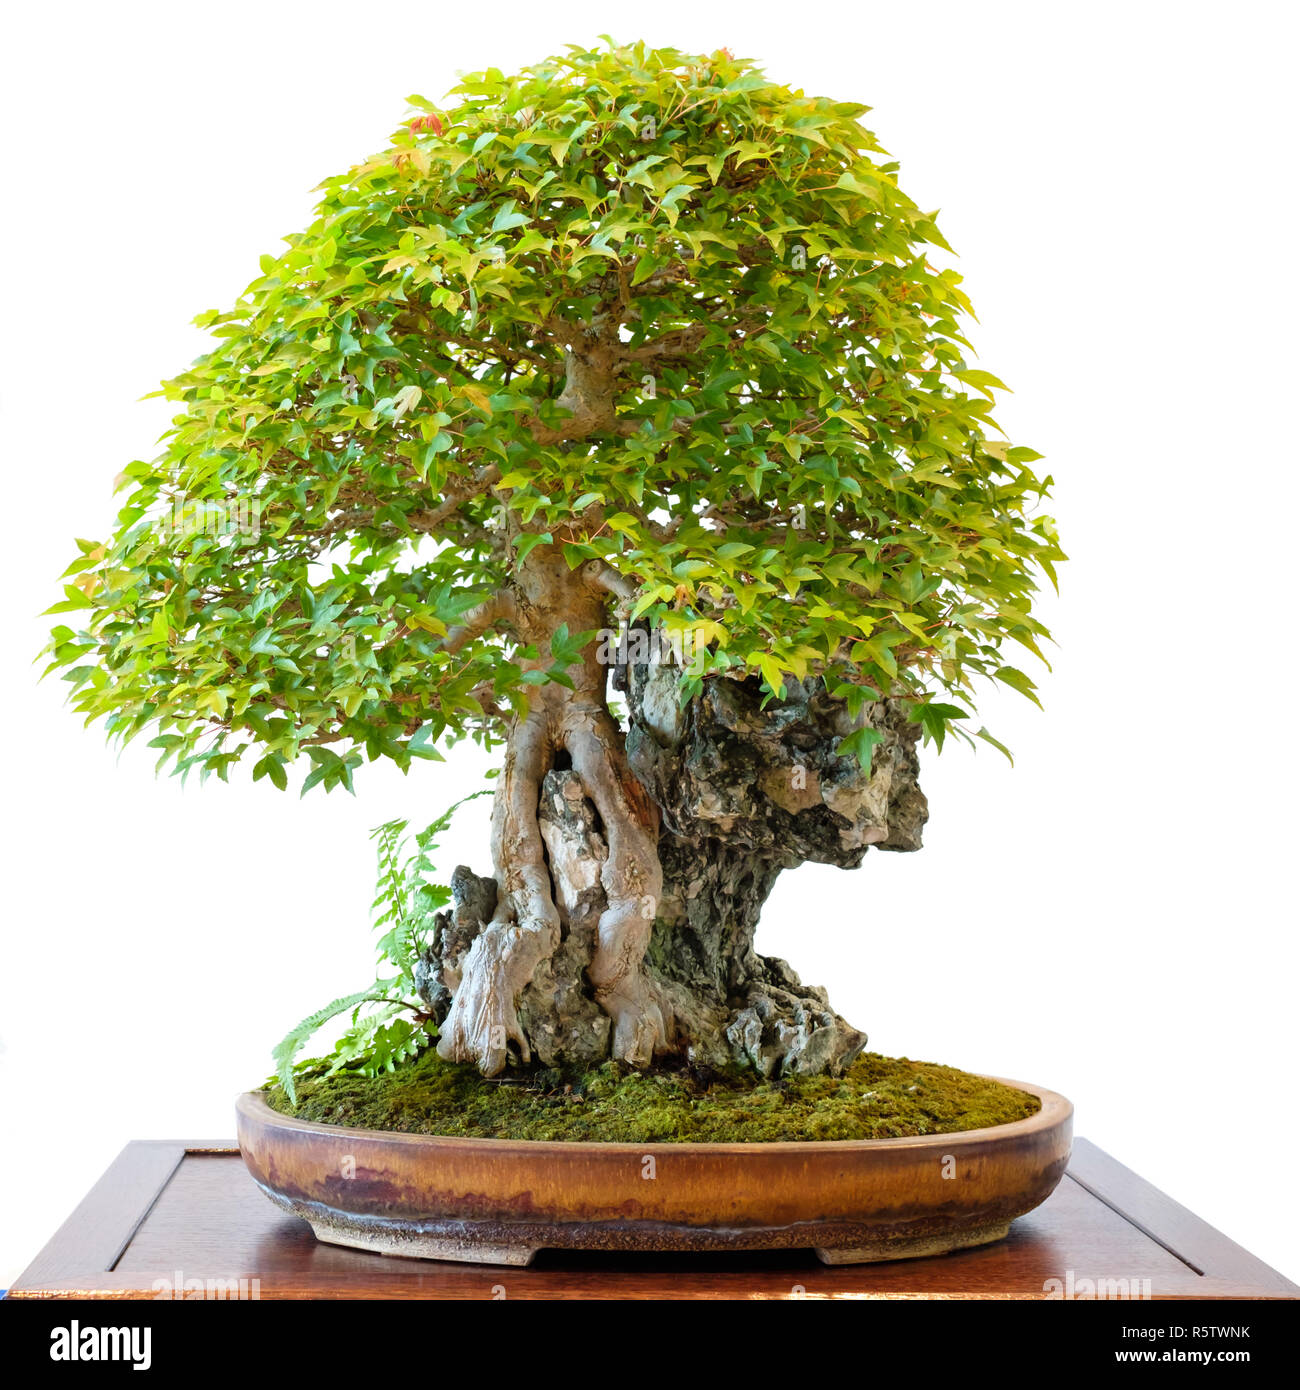 Trident Ahorn (Acer buergerianum) als Bonsai über einen Felsen  Stockfotografie - Alamy